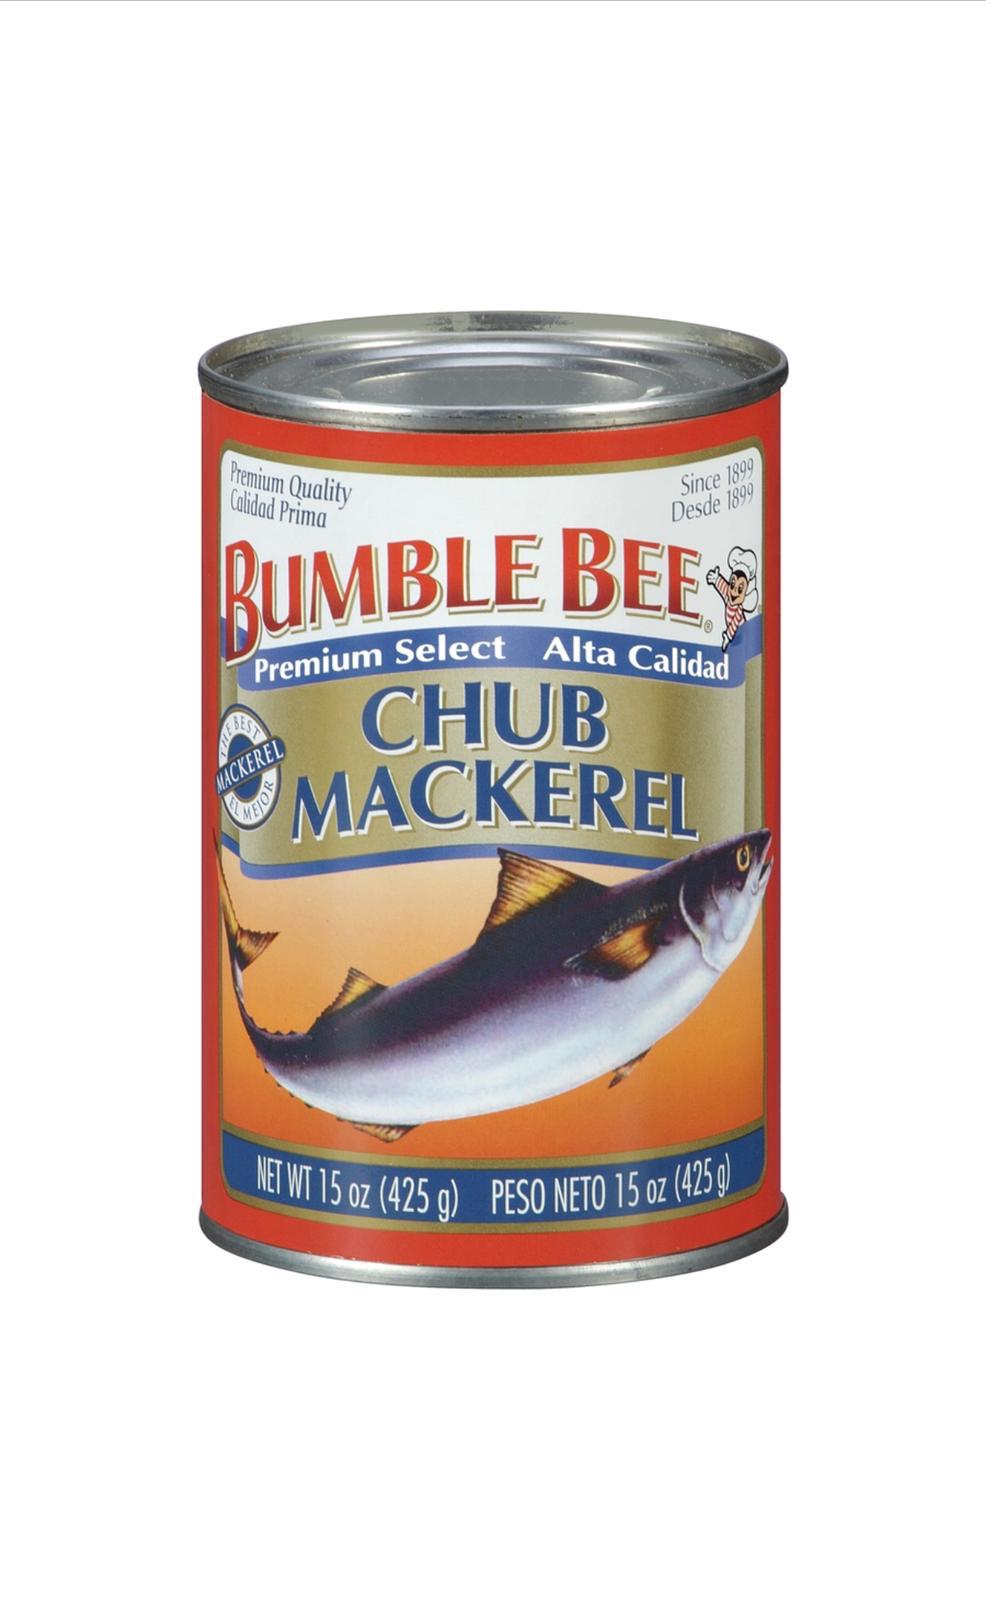 BUMBLE BEE CHUB MACKEREL 12/15 – A & D Wholesale 716